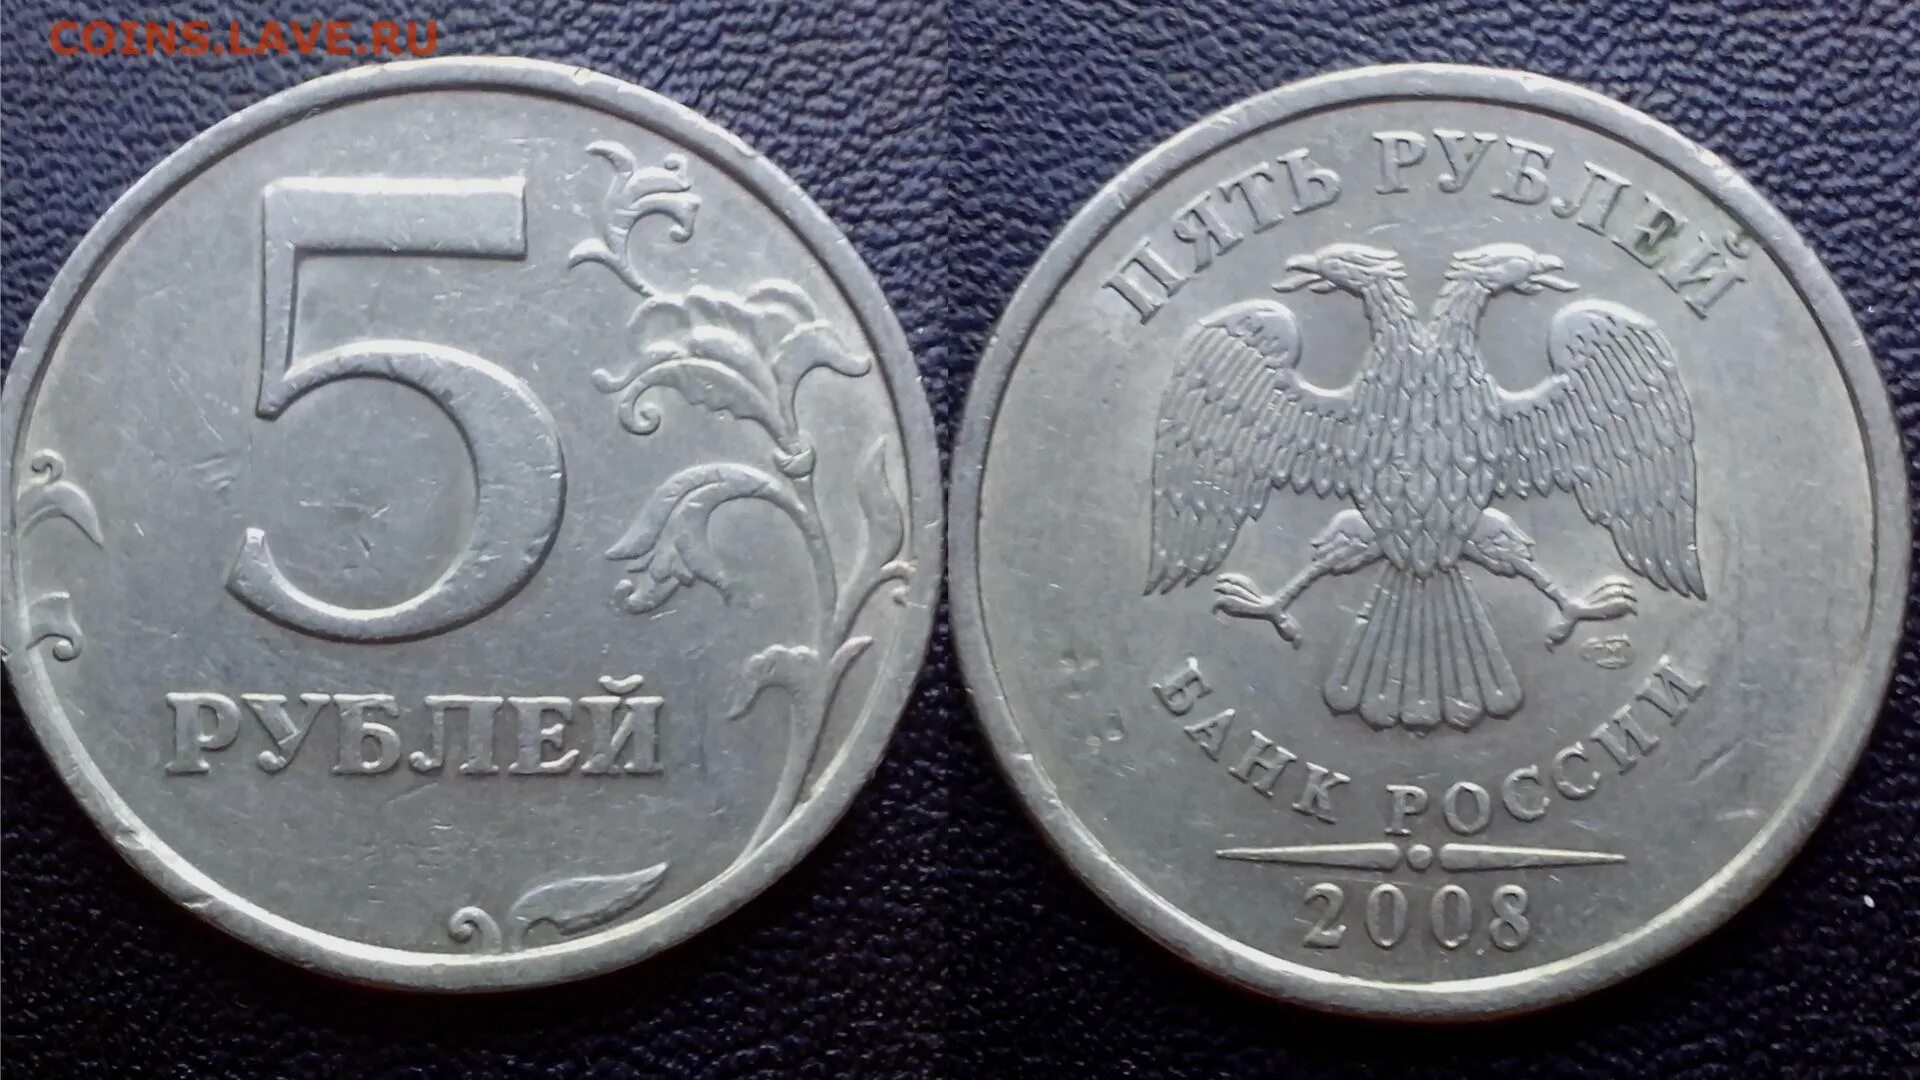 5 Рублей 2000 СПМД. СПМД на монетах 5 рублей. Монета 2 рубля СПМД 2011. 5 Рублей 2013 СПМД.